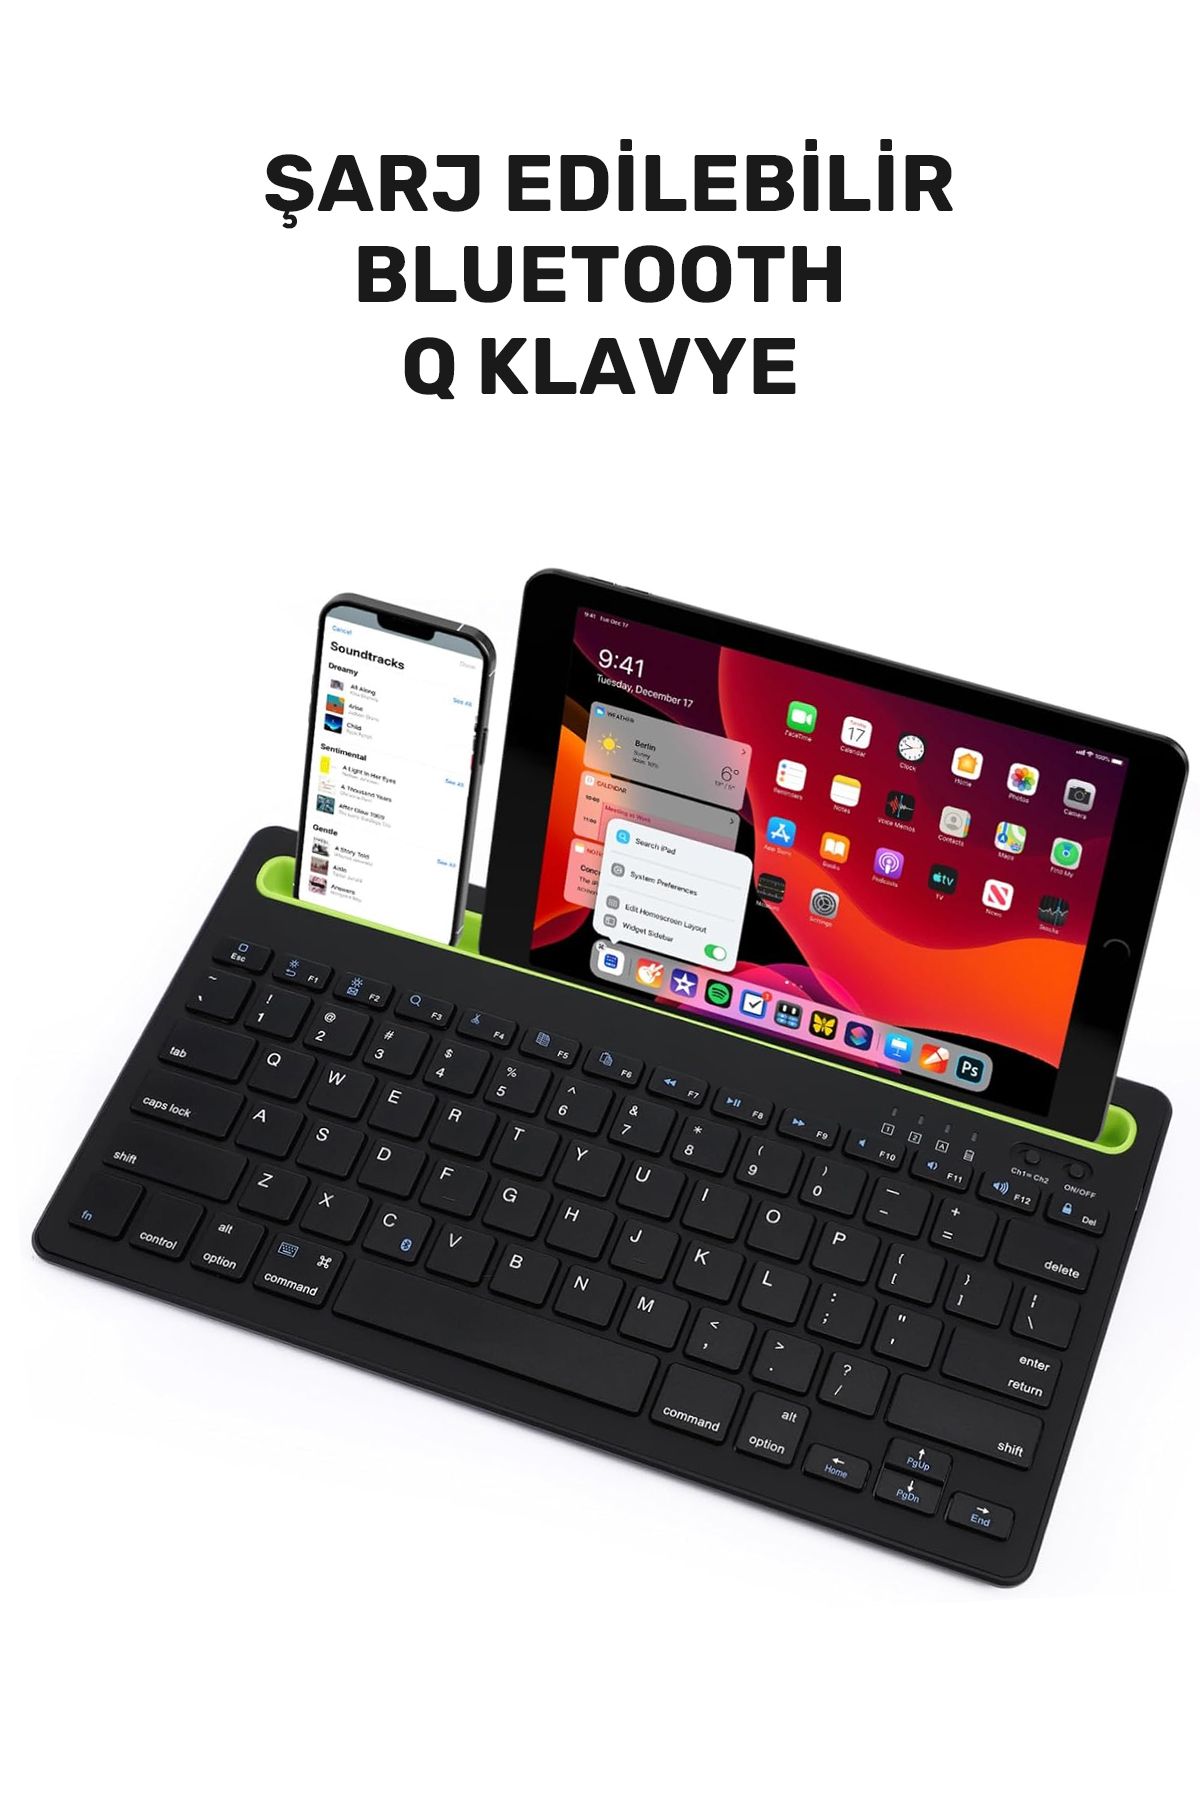 CONOCER Telefon ve Tablet Dahil Tüm Cihazlar ile Uyumlu İnce Şarj Edilebilir Kablosuz Bluetooth Klavye